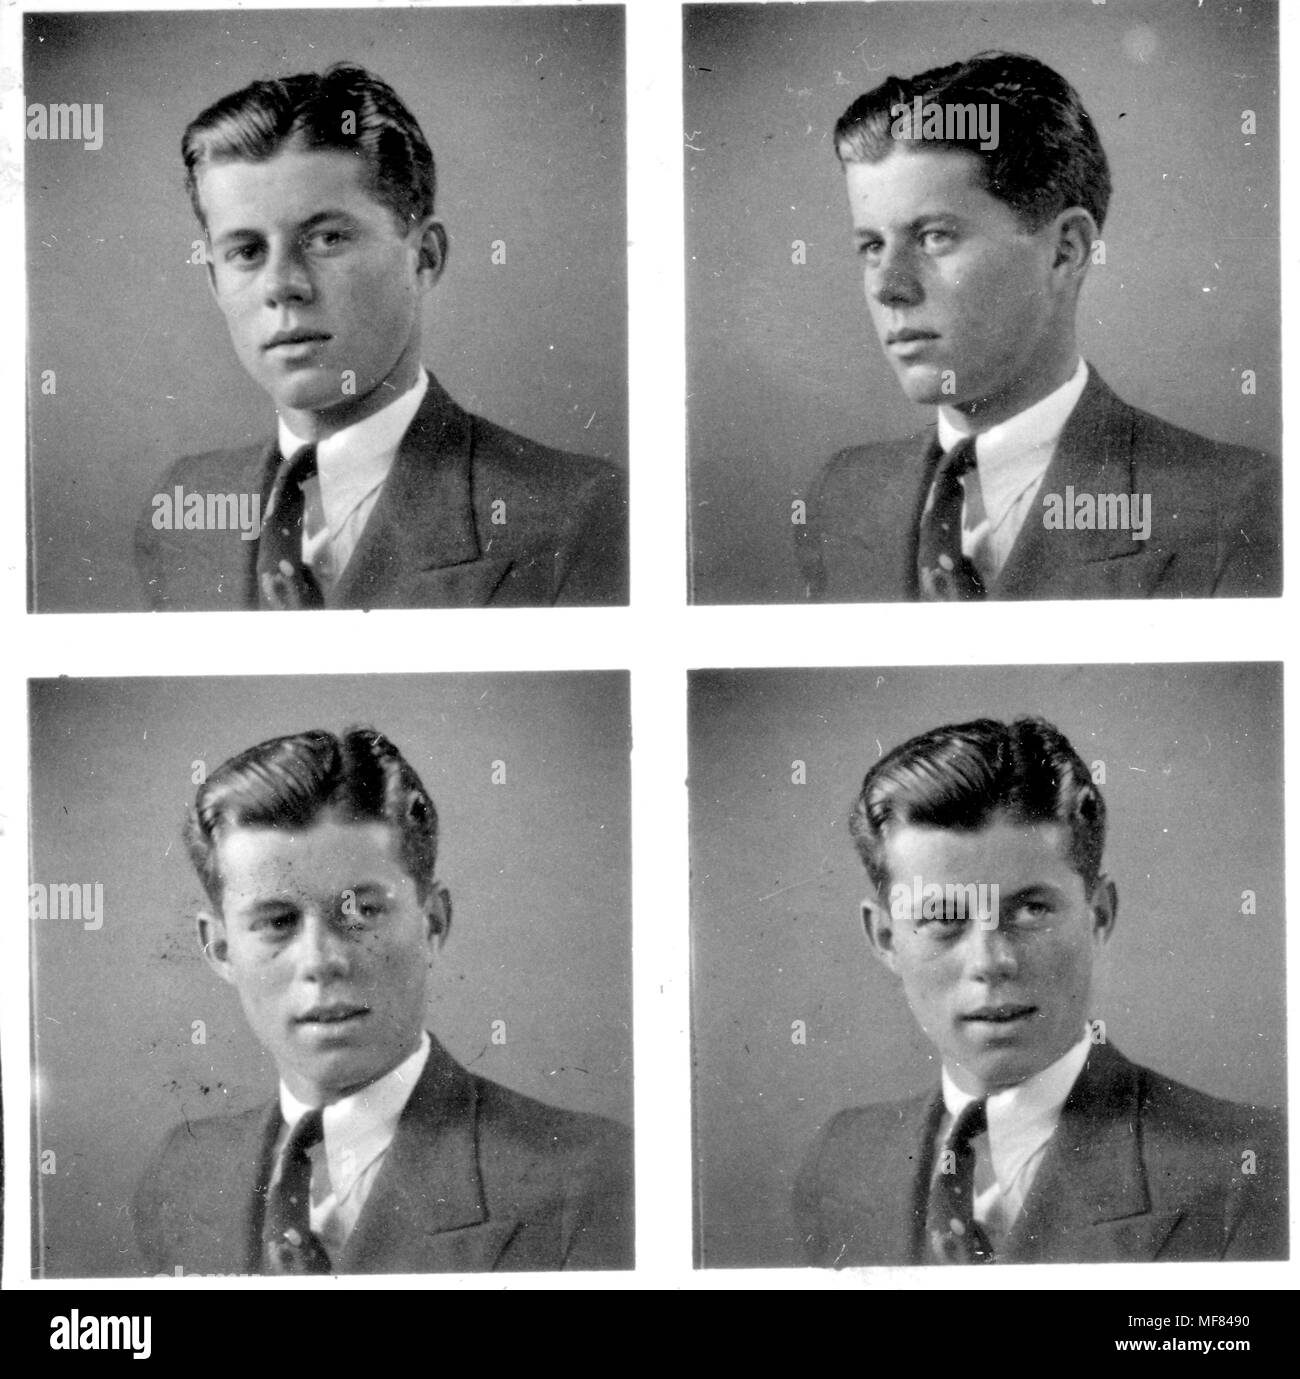 PX 81-32: 143 C. 1935 vier Bilder von John F. Kennedy im Alter von 18 Jahren posieren für ein Portrait Foto. Bitte schreiben Sie: "John F. Kennedy Presidential Library und Museum, Boston' Stockfoto